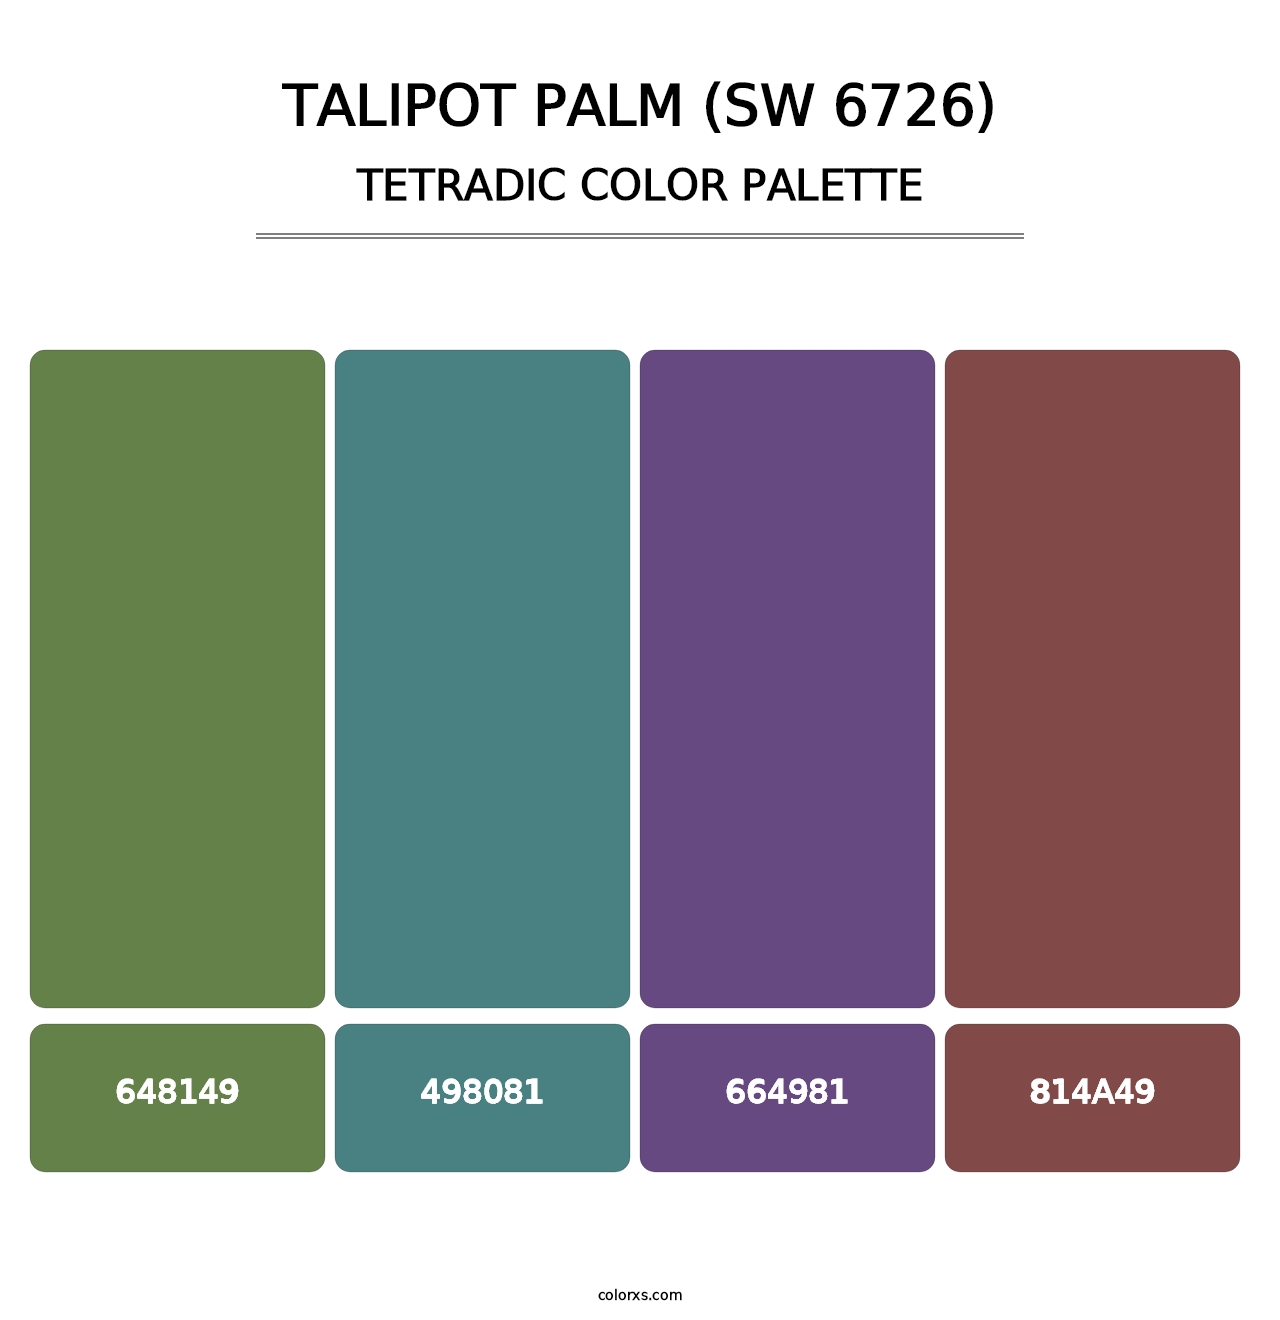 Talipot Palm (SW 6726) - Tetradic Color Palette